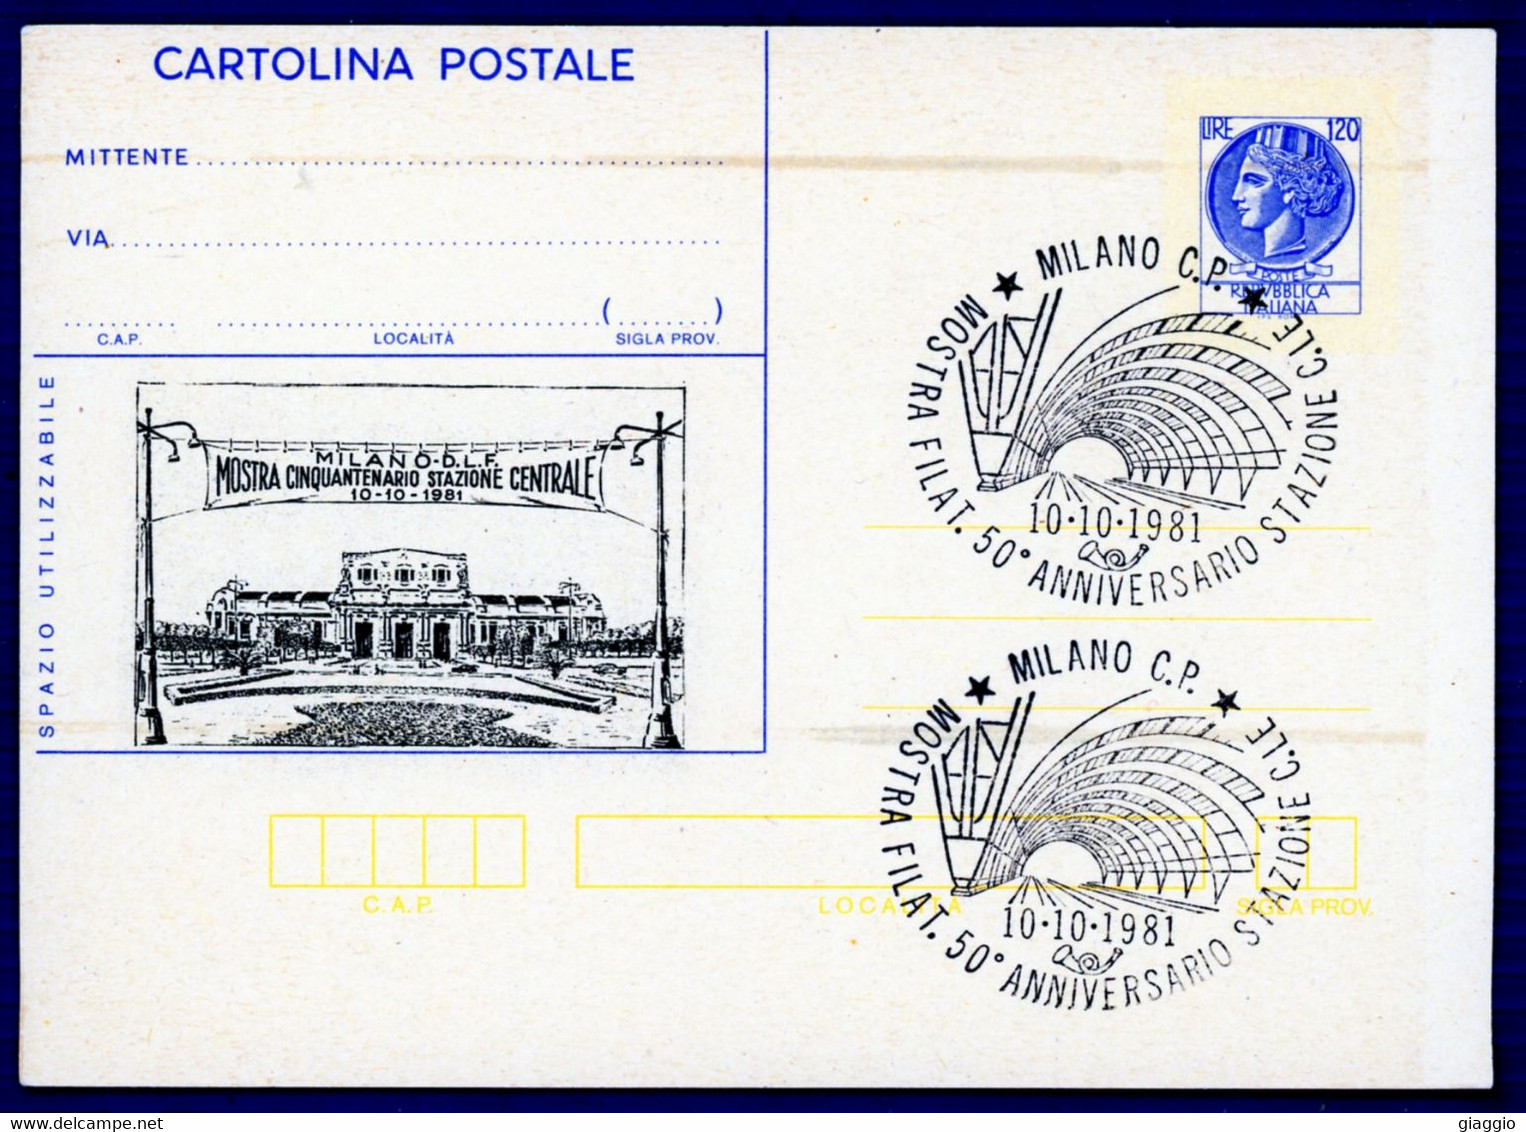 °°° Francobolli N. 4337 - Cartolina Postale Con Annullo Speciale Nuova °°° - Interi Postali